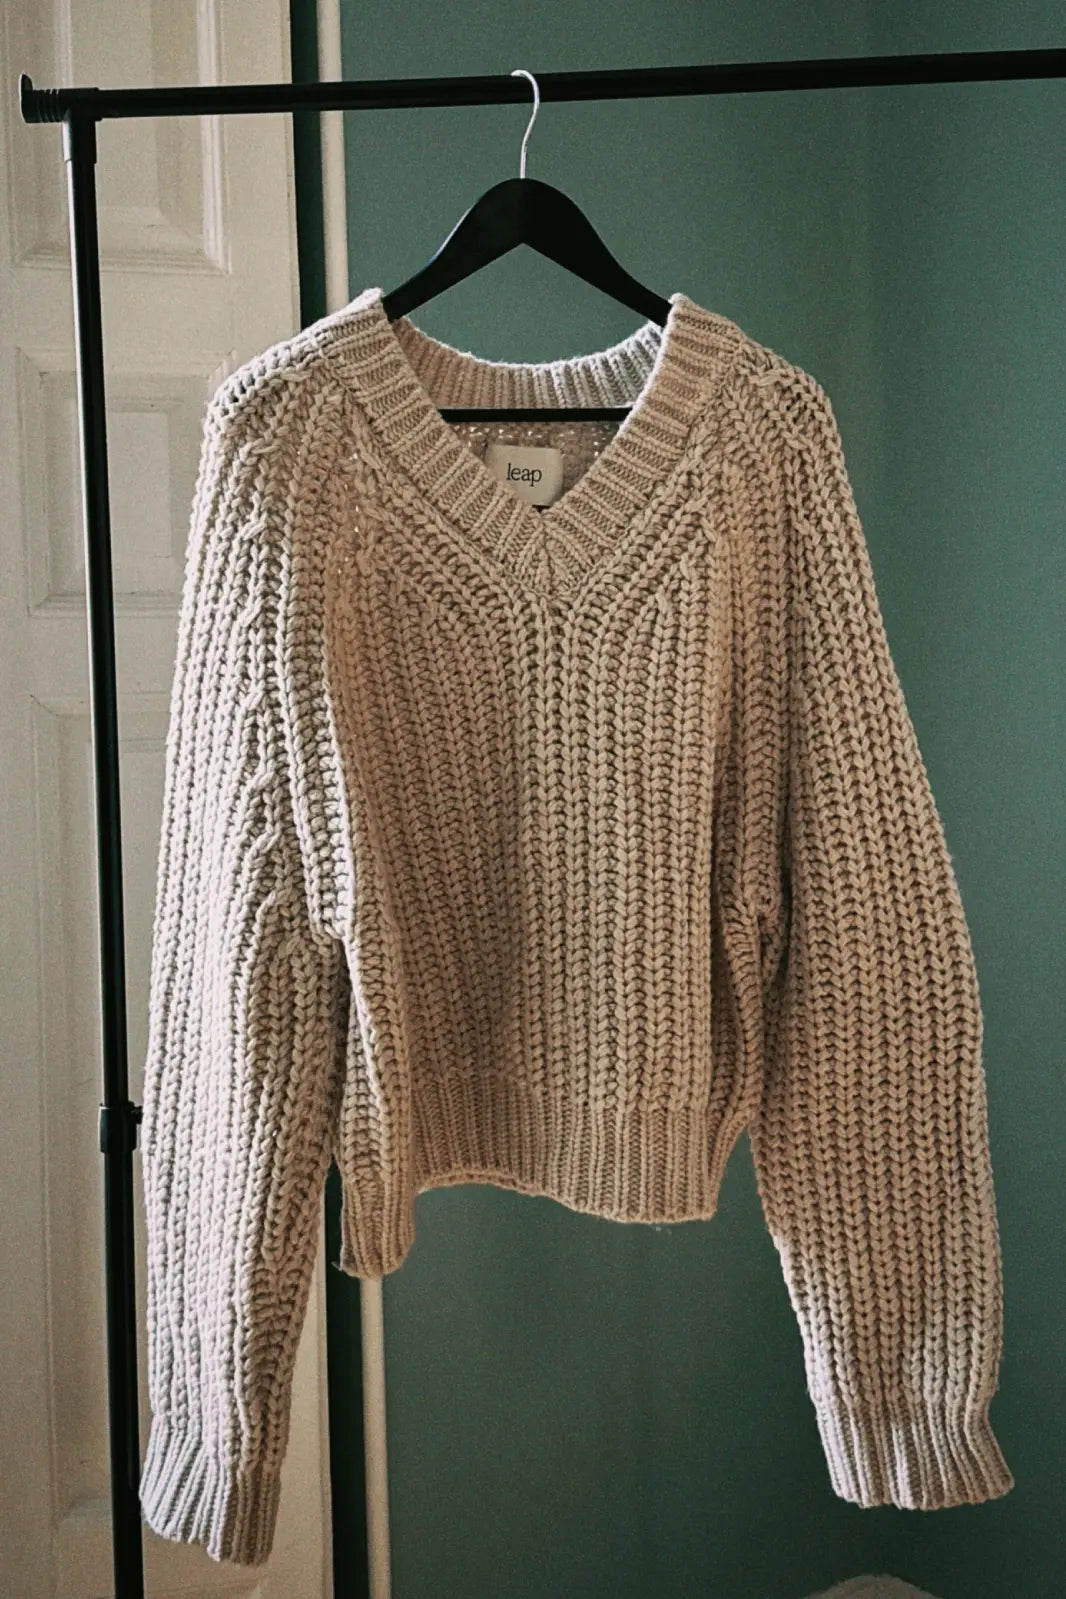 Sample 6 V-neck sweater